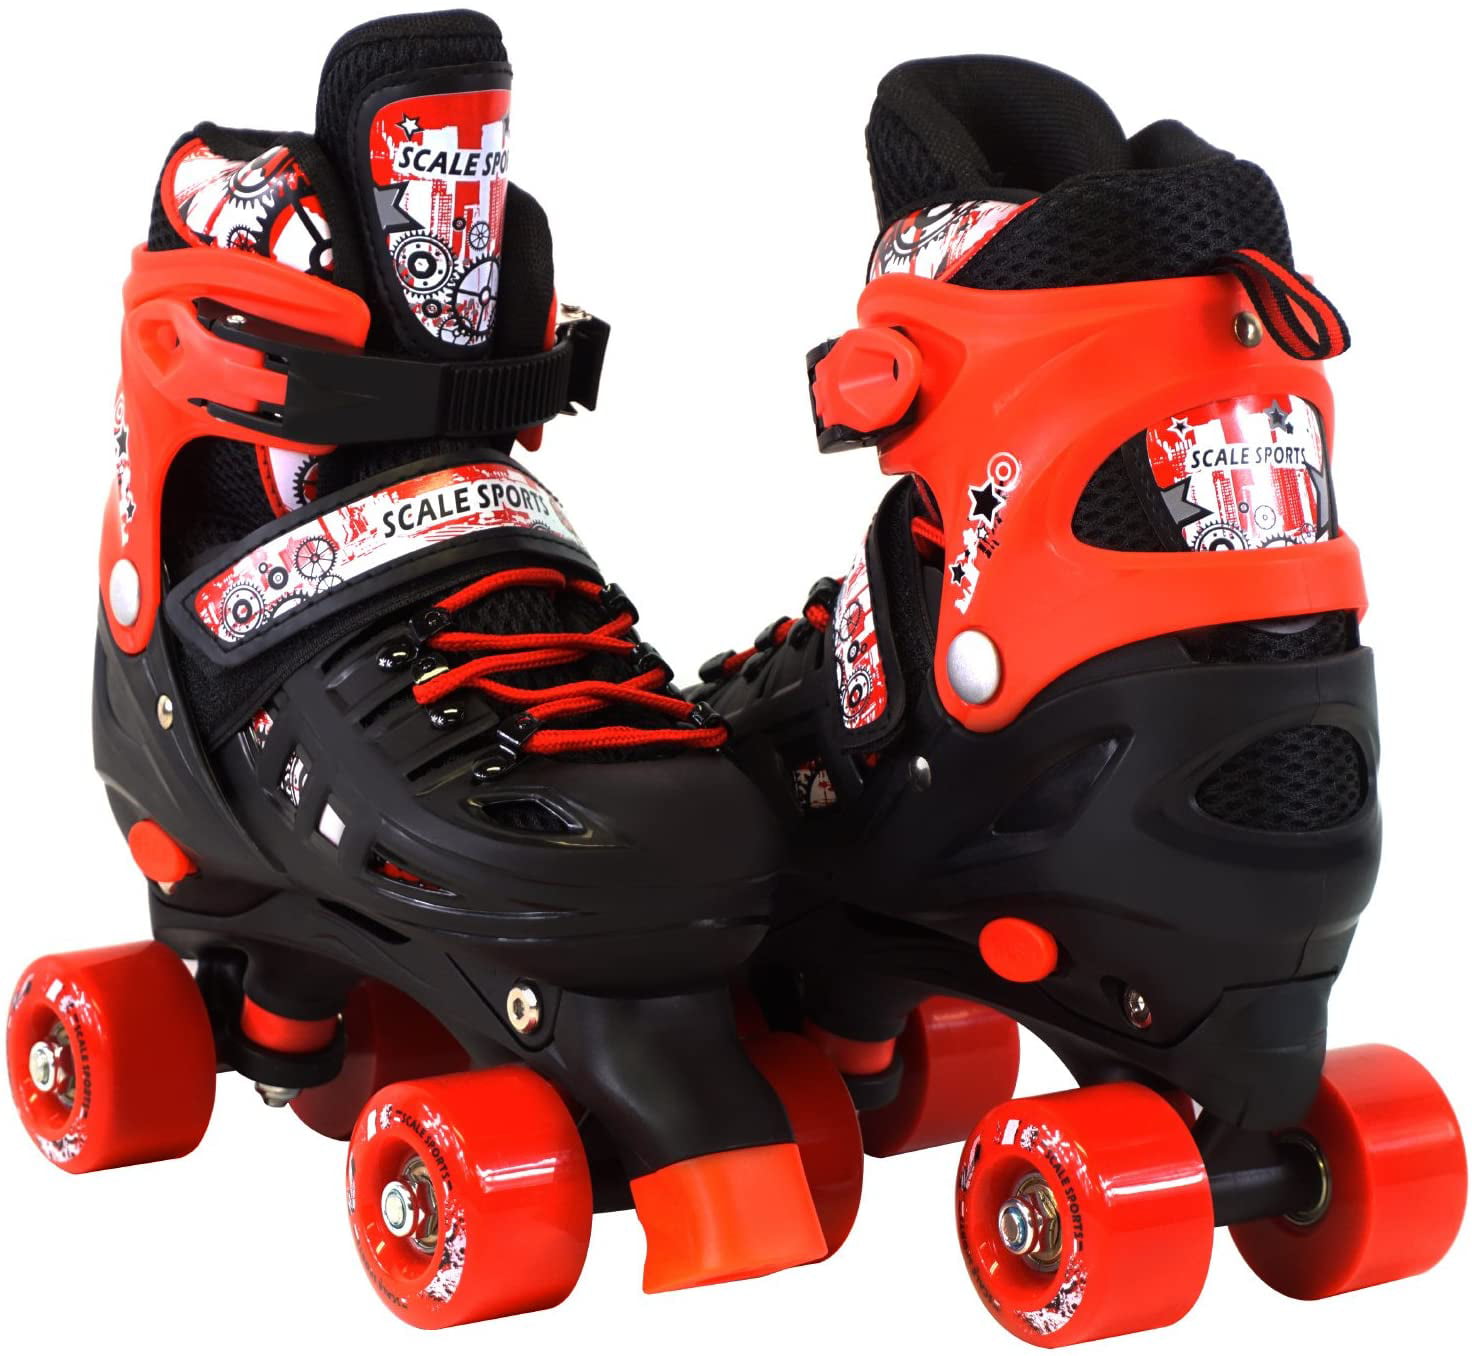 Adjustable Blue Quad Roller Skates For Kids Medium Sizes 